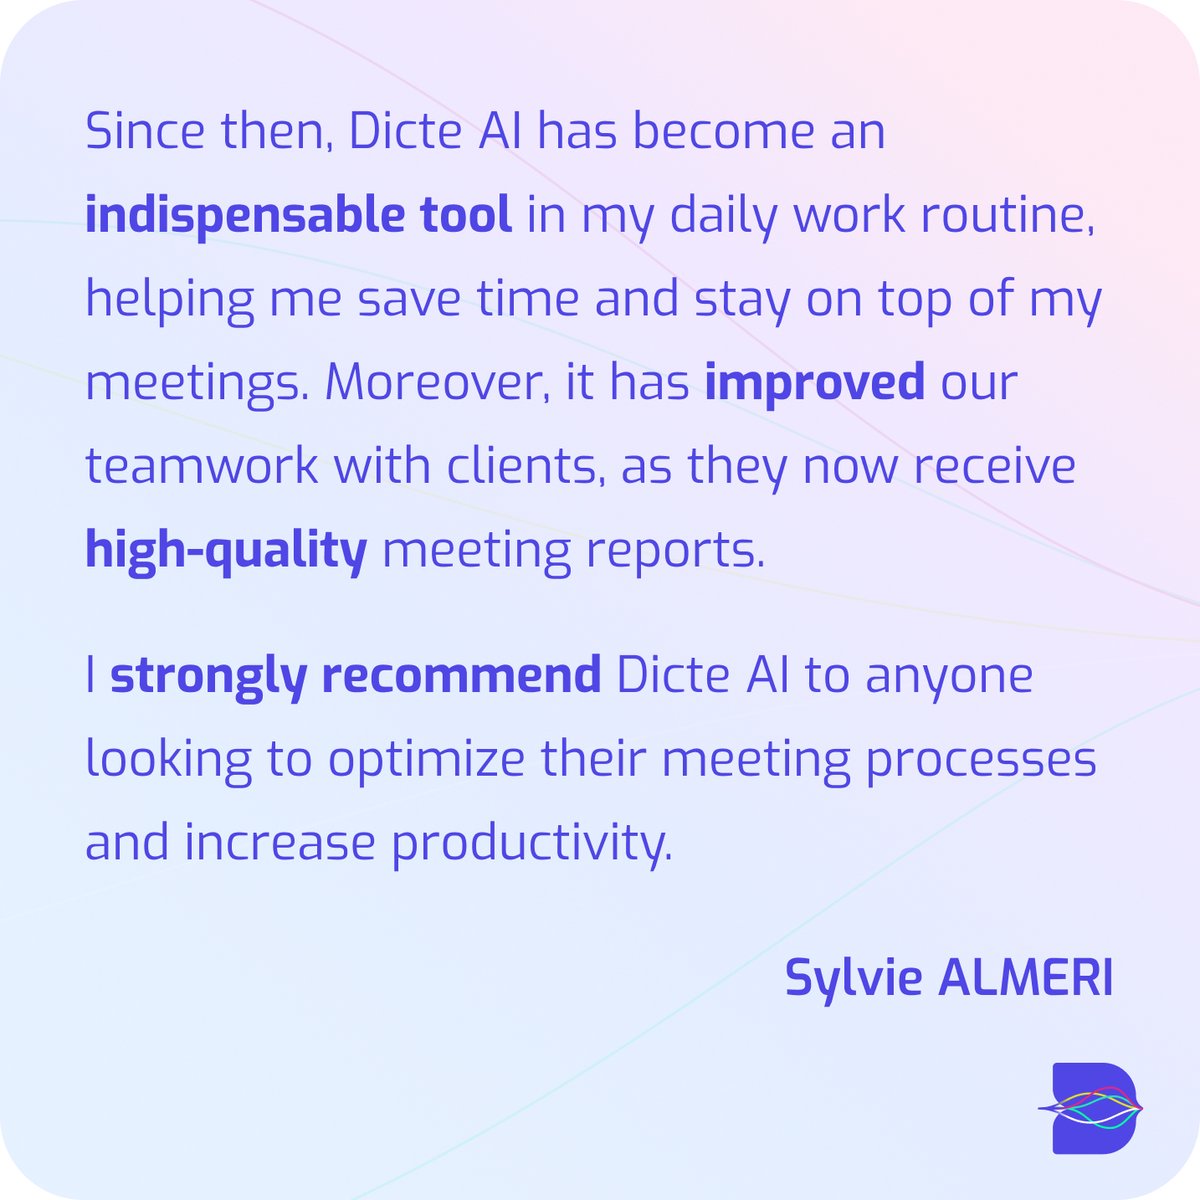 Boostez l'efficacité de vos réunions avec #DicteAI 🚀. Découvrez comment Sylvie Almeri a transformé sa gestion de réunions, rendant son travail plus productif. Prêt à optimiser vos rencontres ? 
#DicteAI #Efficiency #Productivity #innovation #meetings